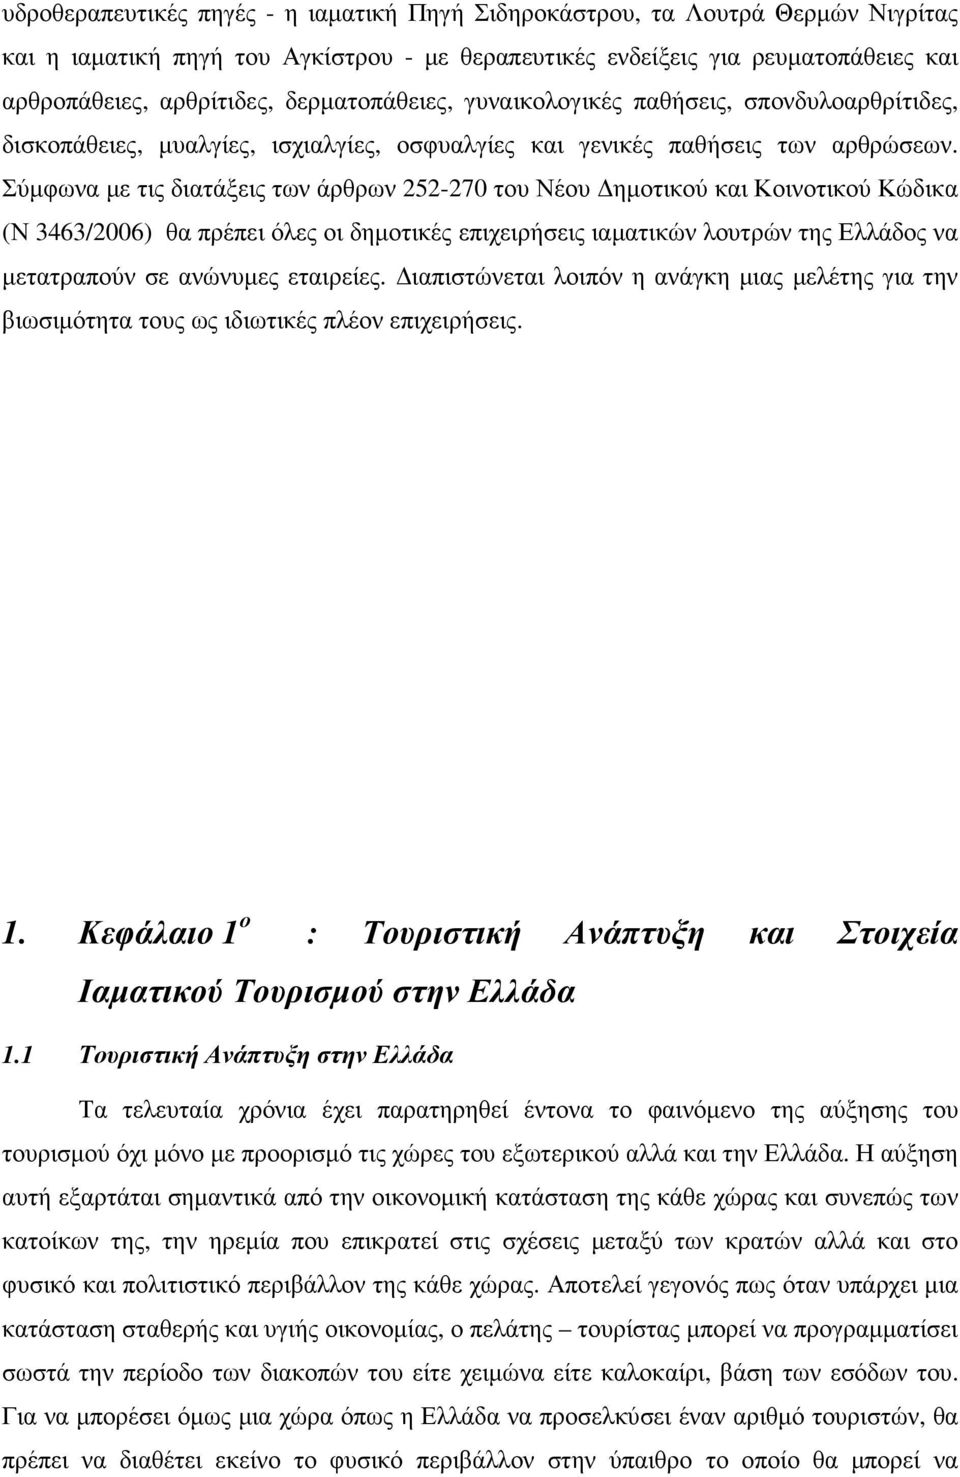 Σύµφωνα µε τις διατάξεις των άρθρων 252-270 του Νέου ηµοτικού και Κοινοτικού Κώδικα (Ν 3463/2006) θα πρέπει όλες οι δηµοτικές επιχειρήσεις ιαµατικών λουτρών της Ελλάδος να µετατραπούν σε ανώνυµες